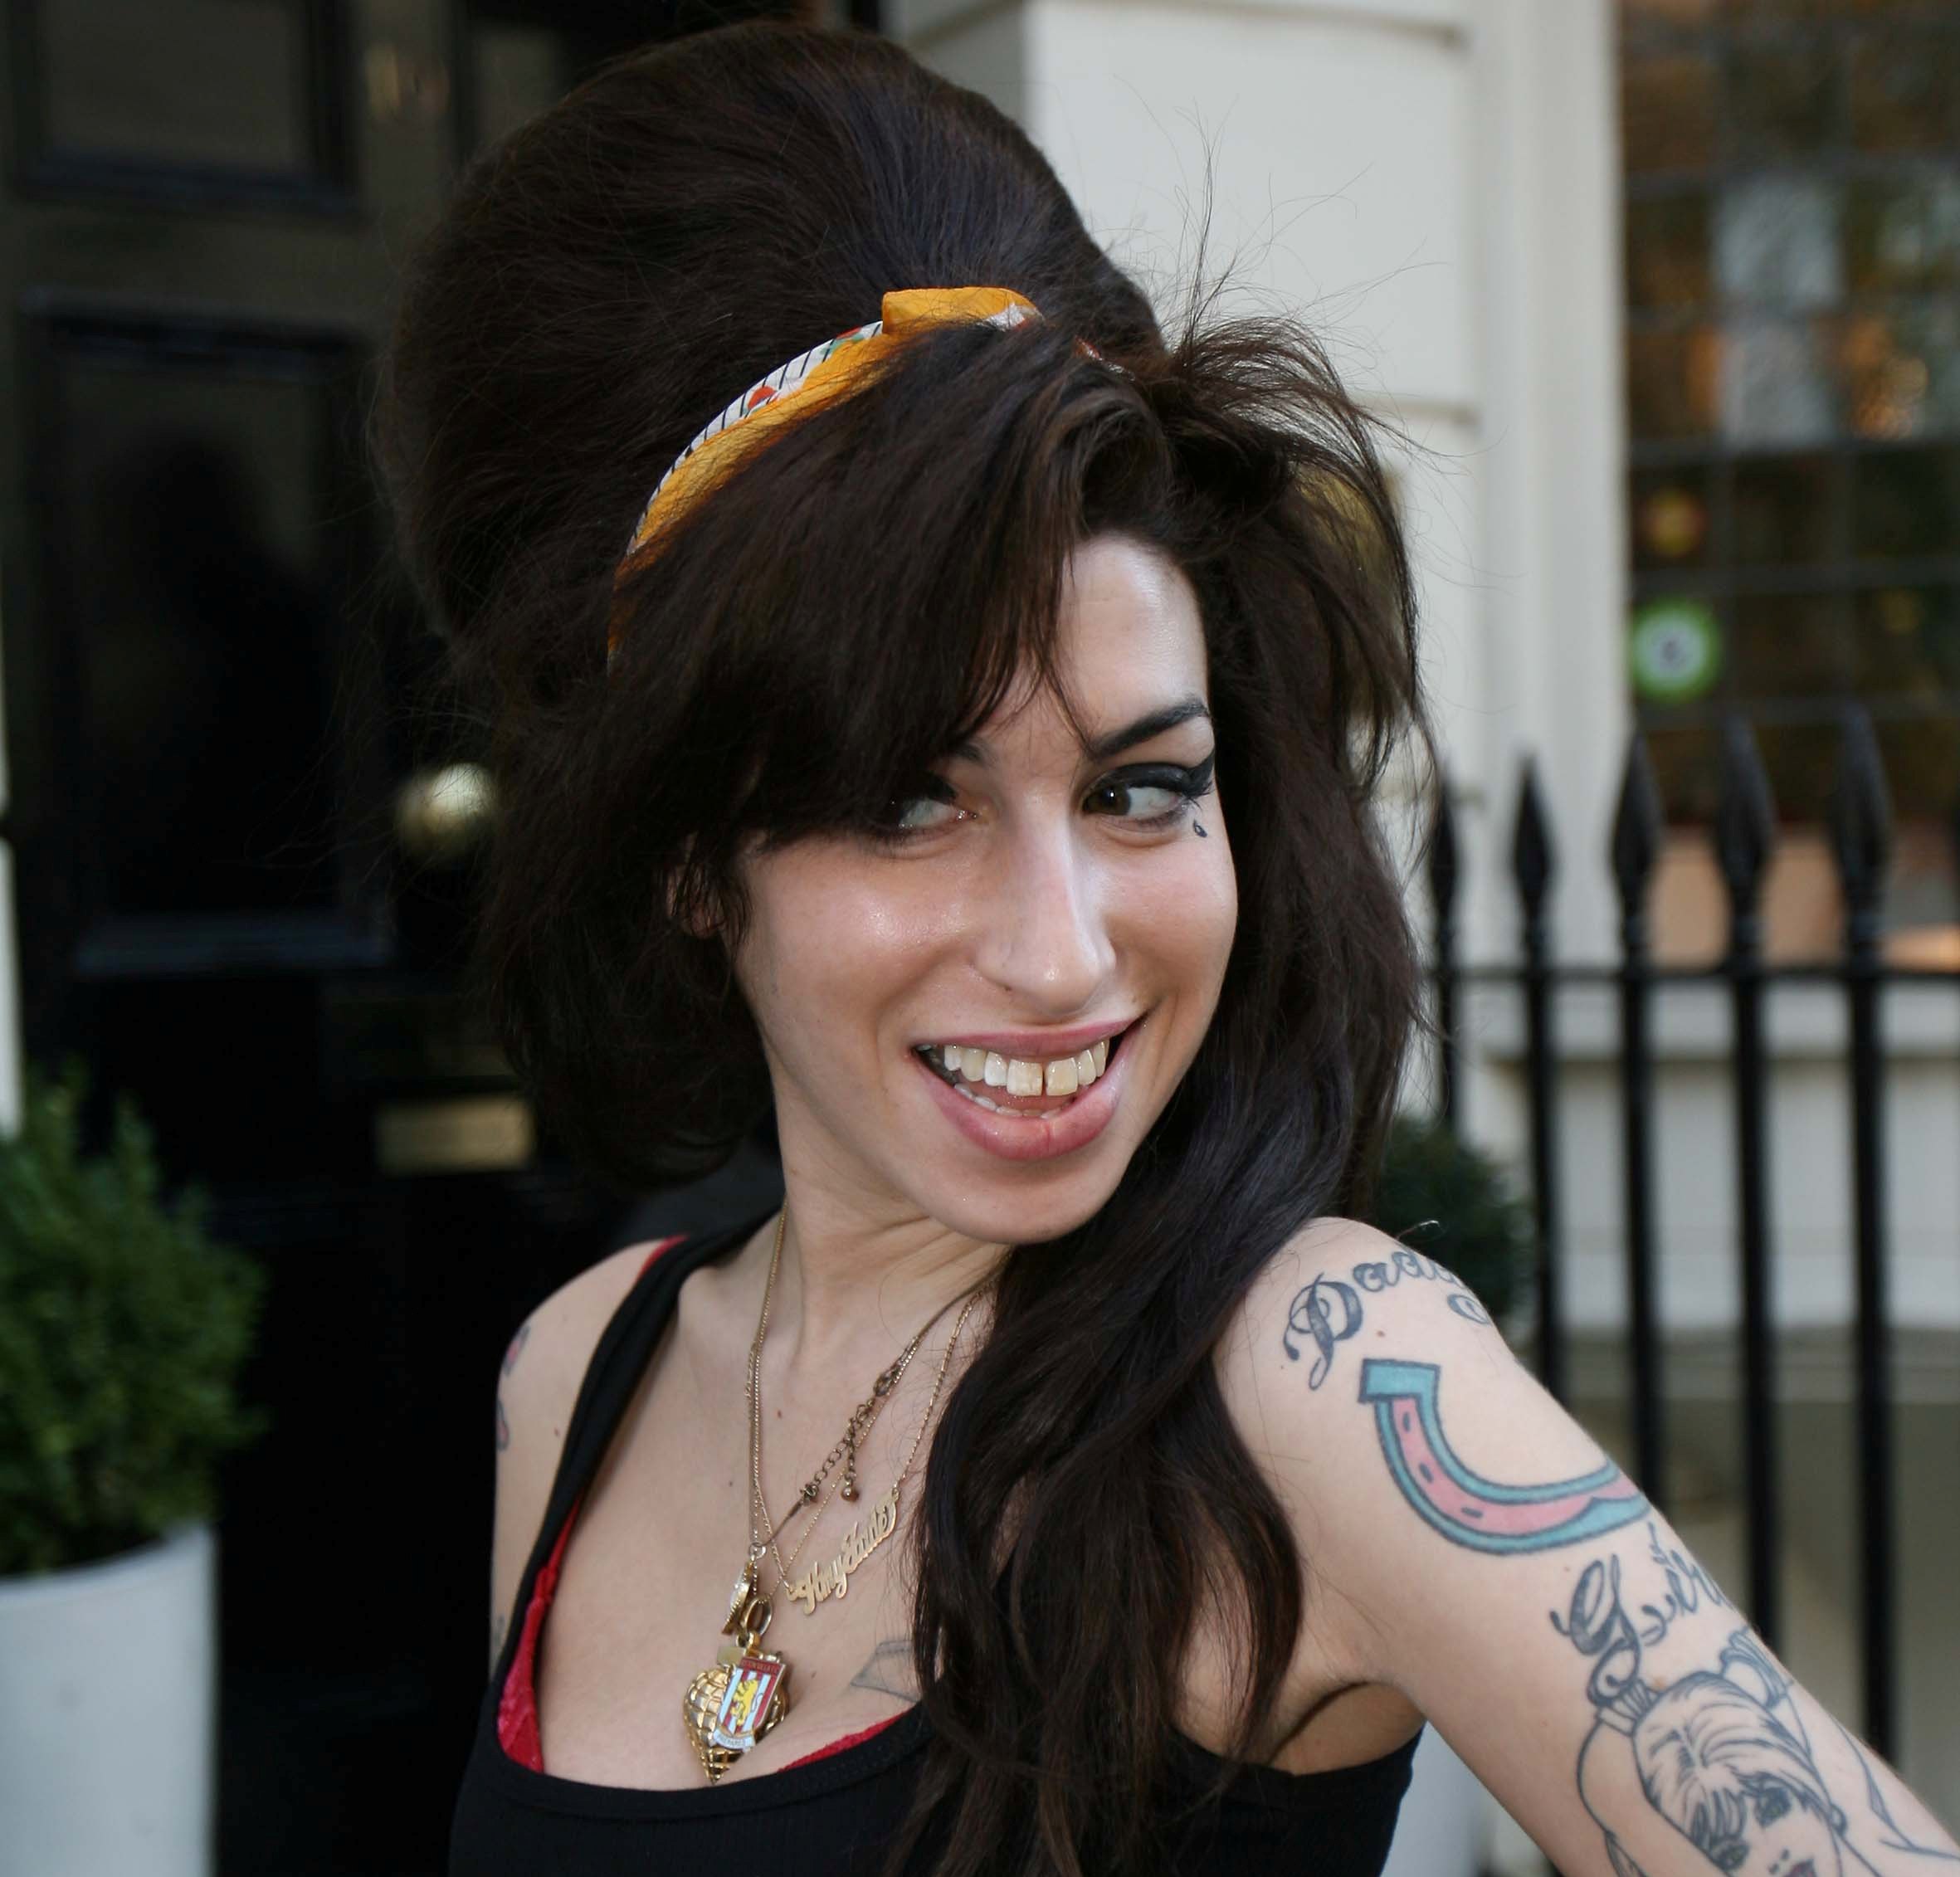 Κηδεύεται σήμερα στο Λονδίνο η Amy Winehouse